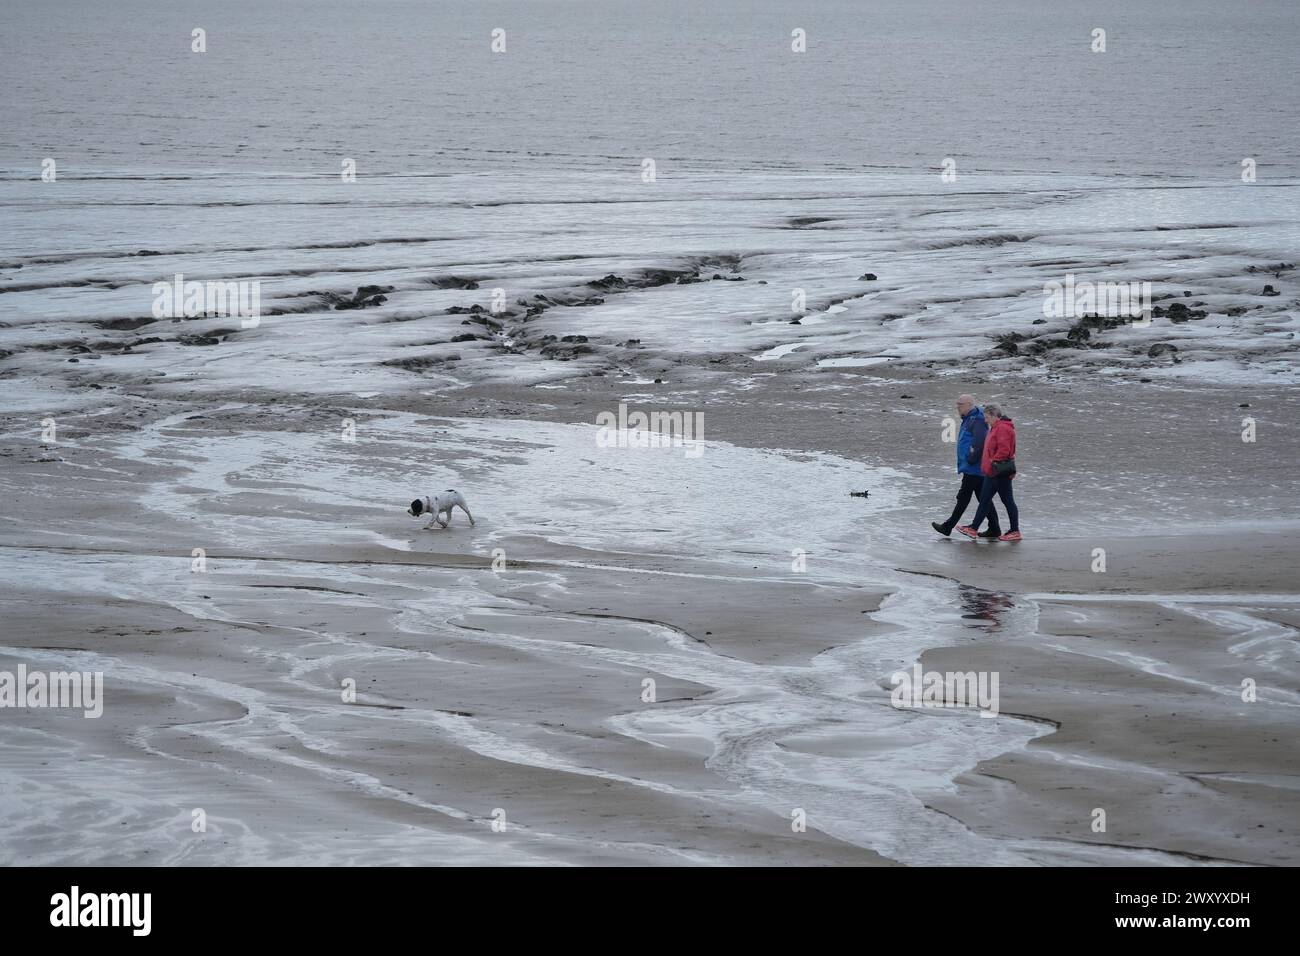 Deux personnes promenant leur chien sur une plage froide, humide, venteuse et pluvieuse. Banque D'Images